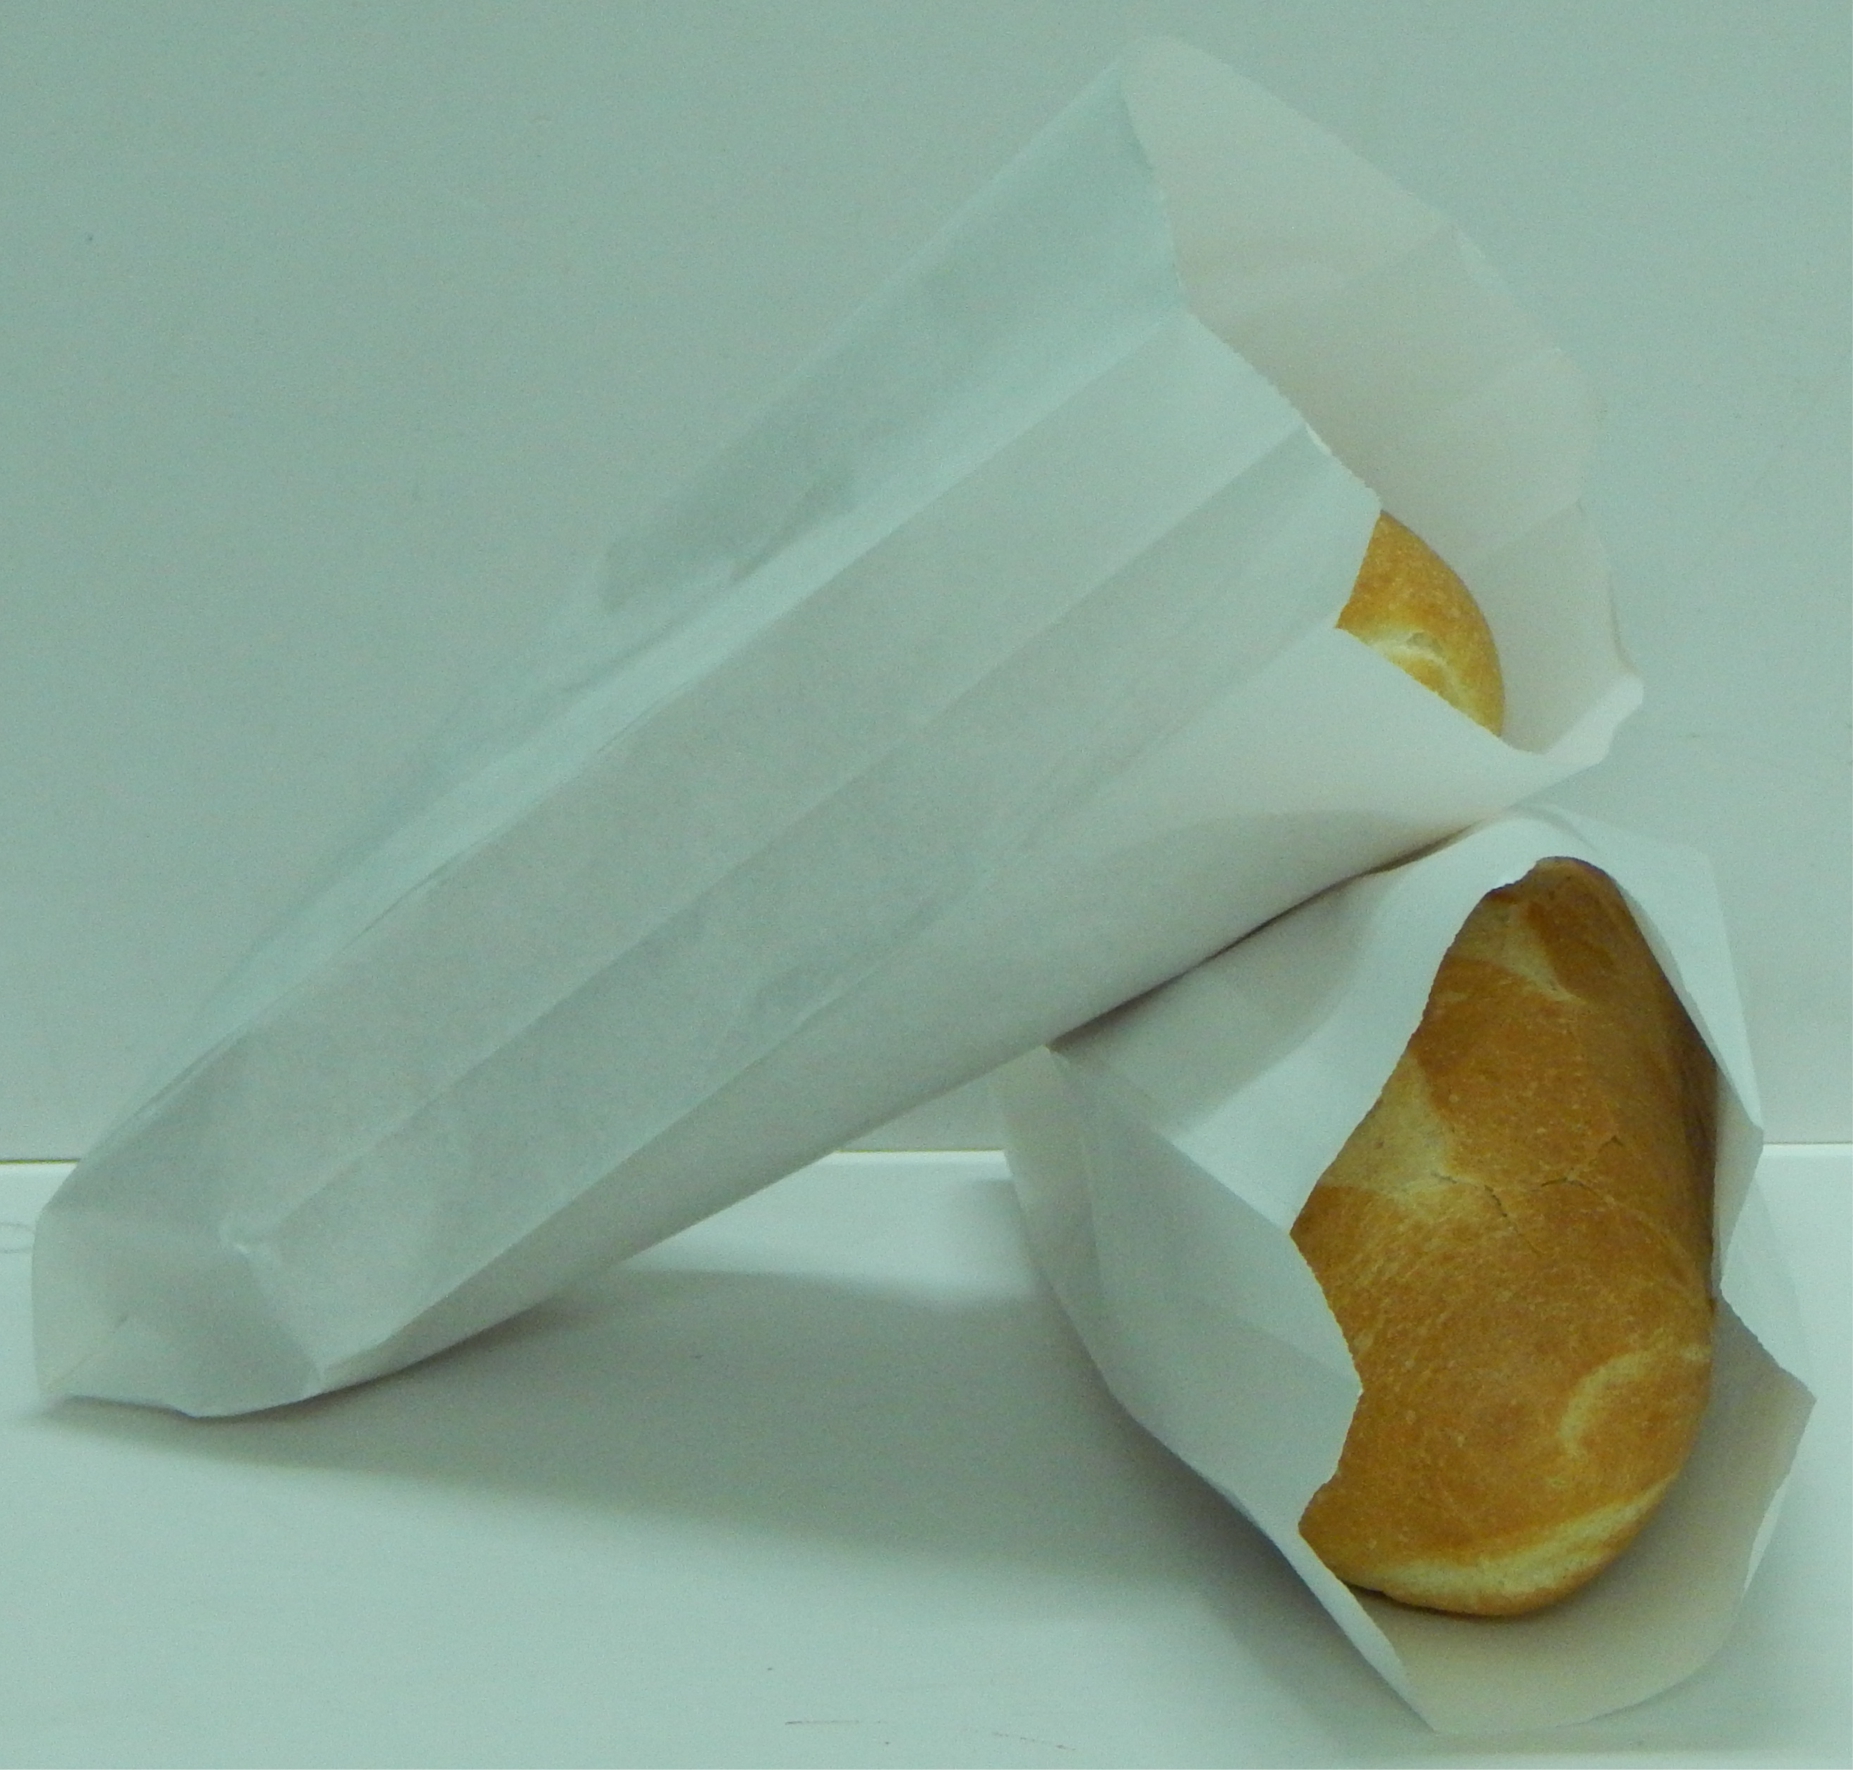 Cất giữ bánh mì trong bọc túi giấy giúp chúng giữ nguyên độ giòn